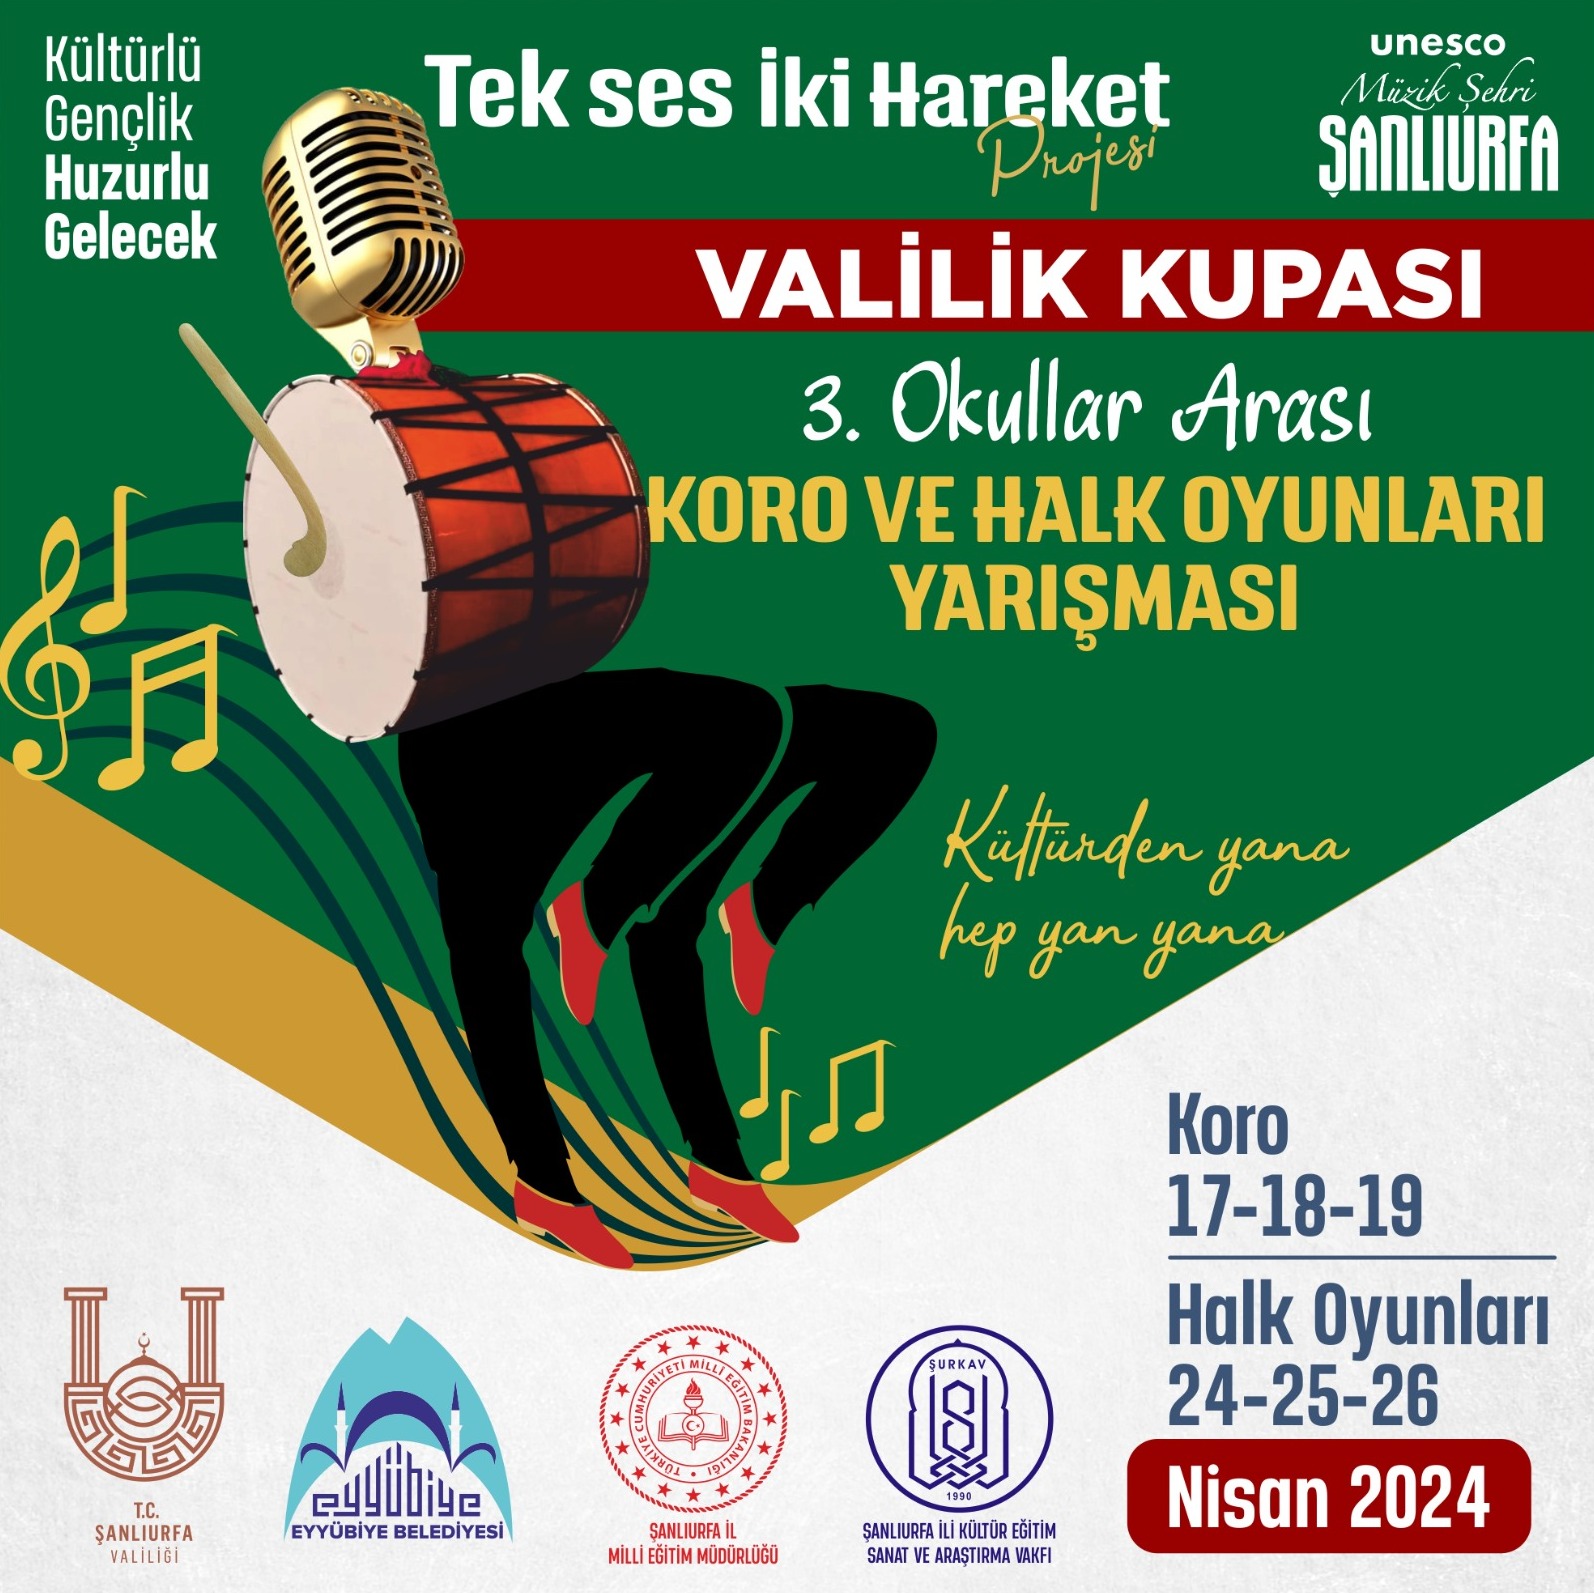 UNESCO Müzik Şehri Şanlıurfa'da heyecan yaratacak yarışma